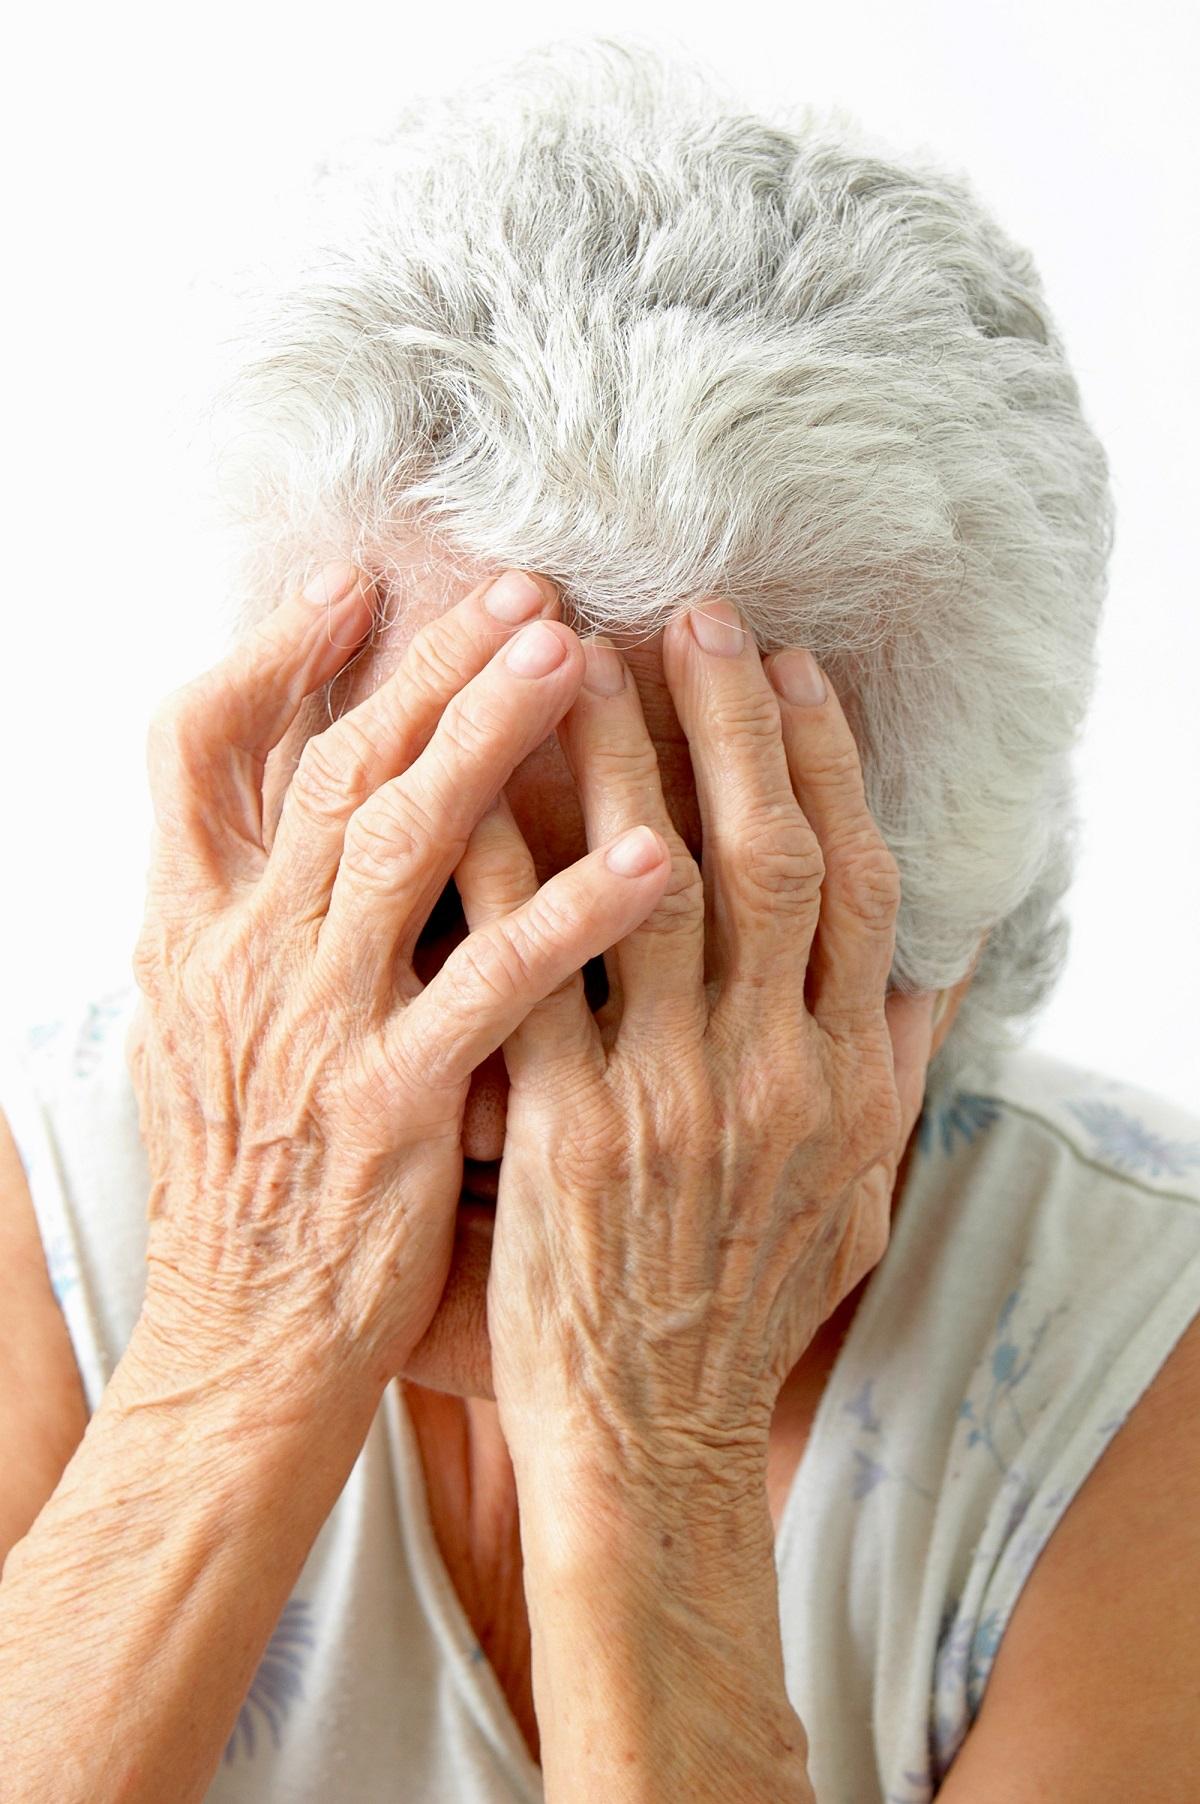 Кожный зуд у пожилых лечение. Заболевания кожи в пожилом возрасте.